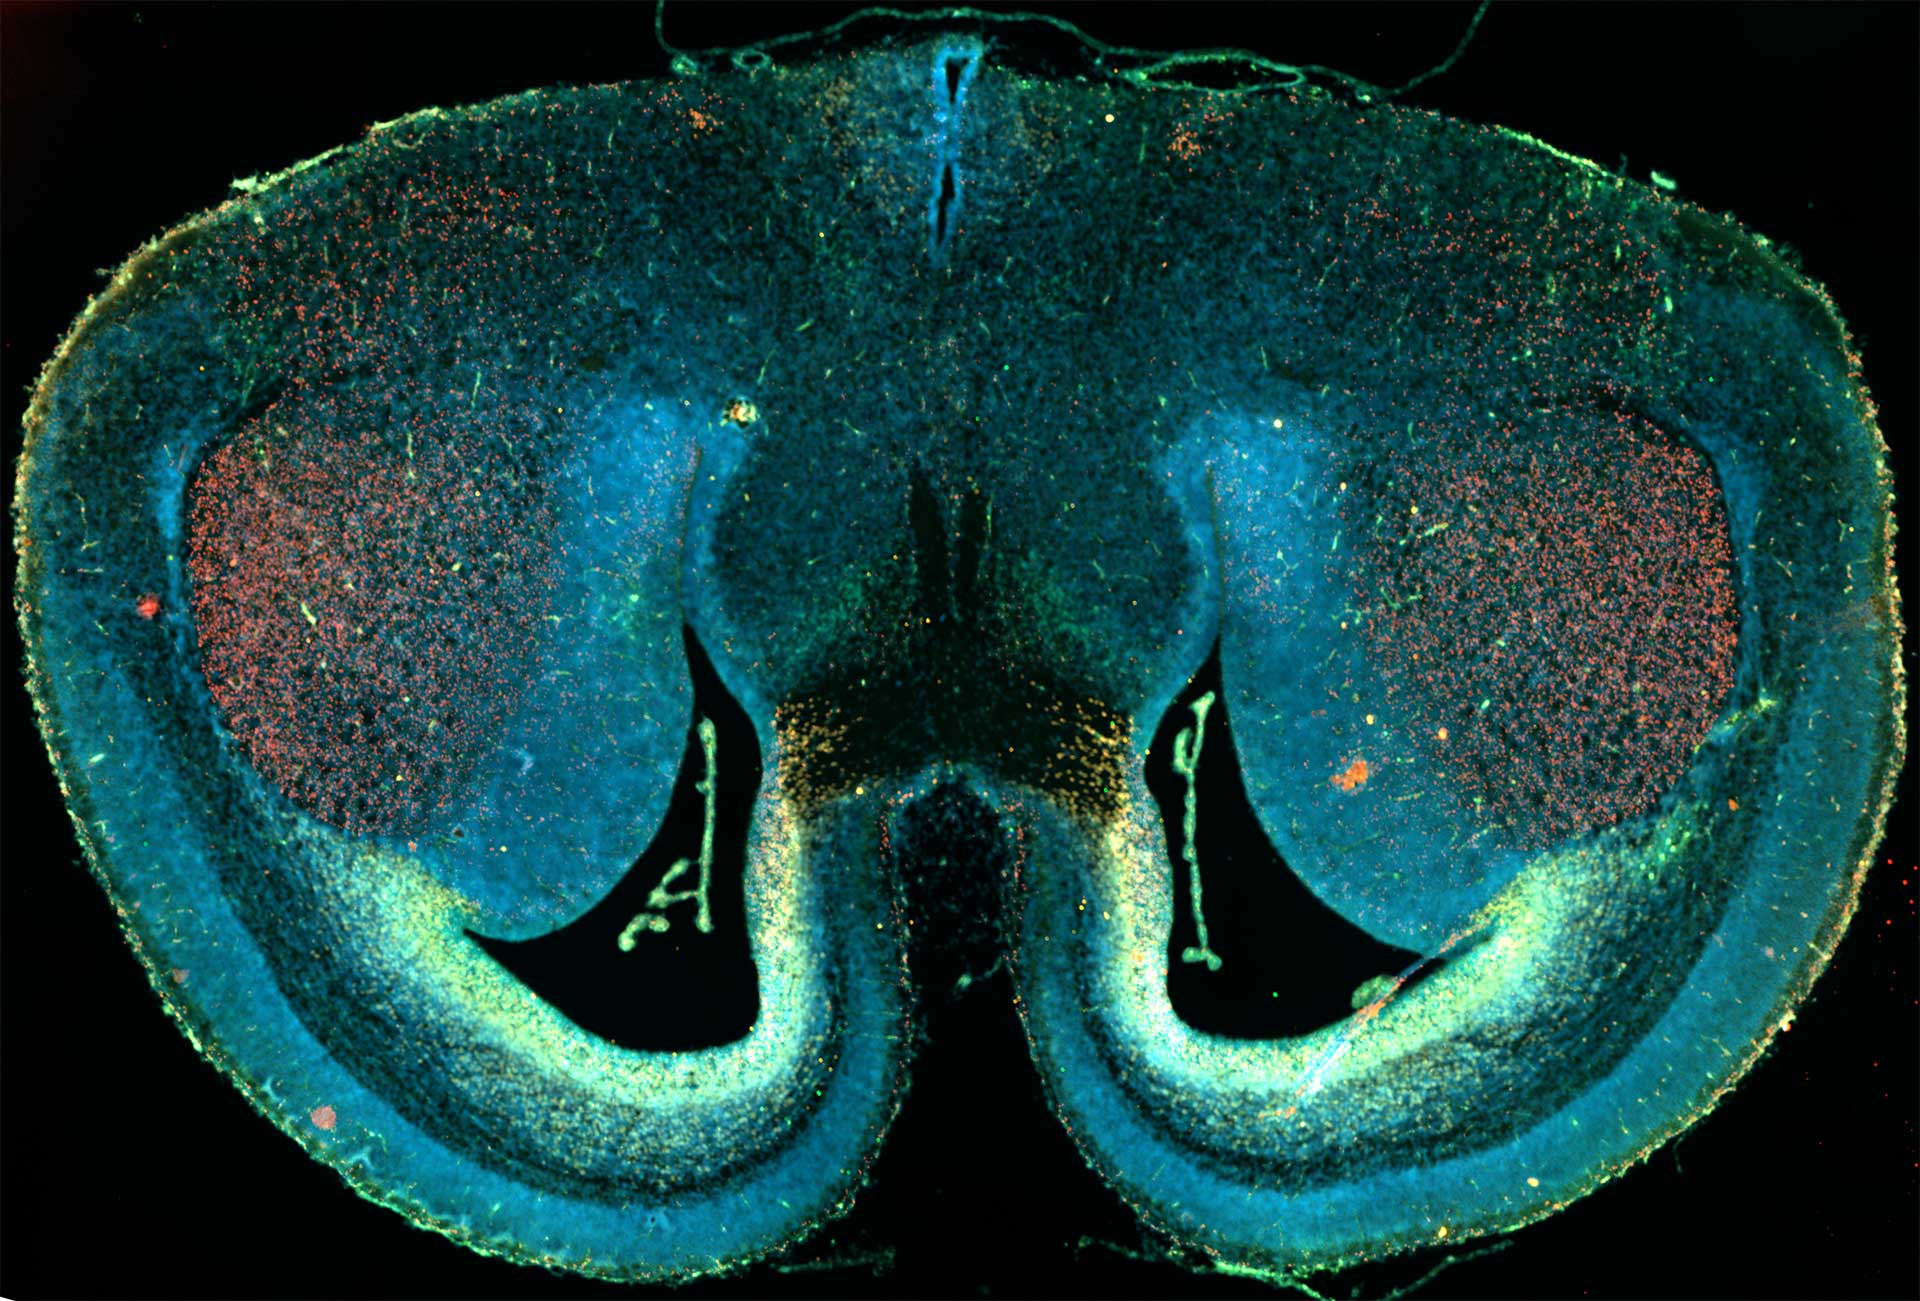 マウスの脳切片、ワイドフィールド蛍光顕微鏡とタイリングを使用してイメージング。試料ご提供：D. Mi, School of Life Sciences, Tsinghua University, China